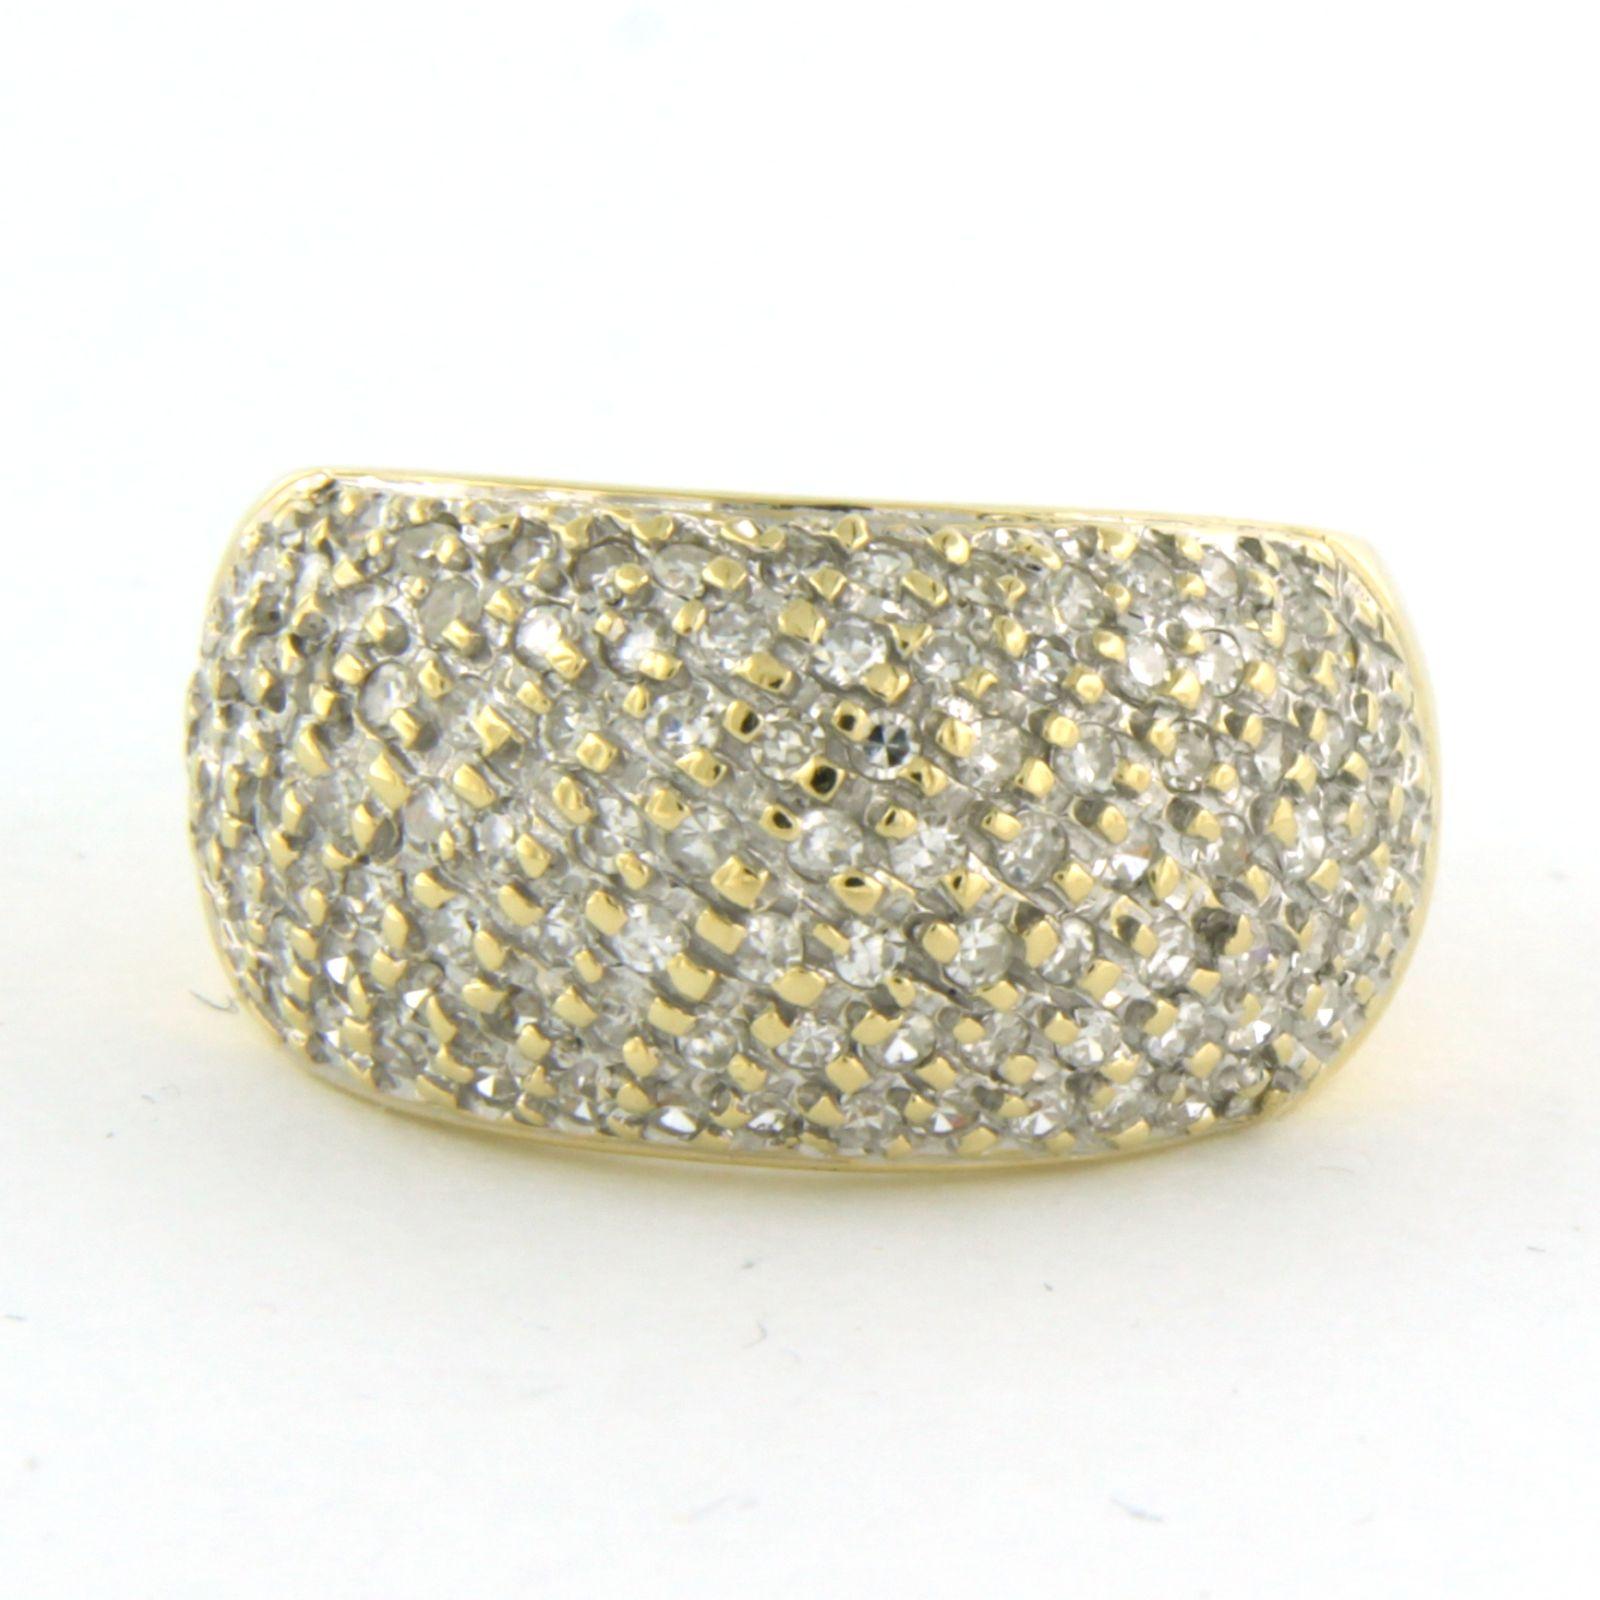 Bague en or bicolore 18k avec diamant taille unique jusqu'à . 0.70ct - F/G - VS/SI - taille U.S. 6 - EU. 16.5(52)

Description détaillée

le haut de l'anneau mesure 1,1 cm de large et 4,2 mm de haut

Bague taille US 6 - EU. 16.5(52), la bague peut